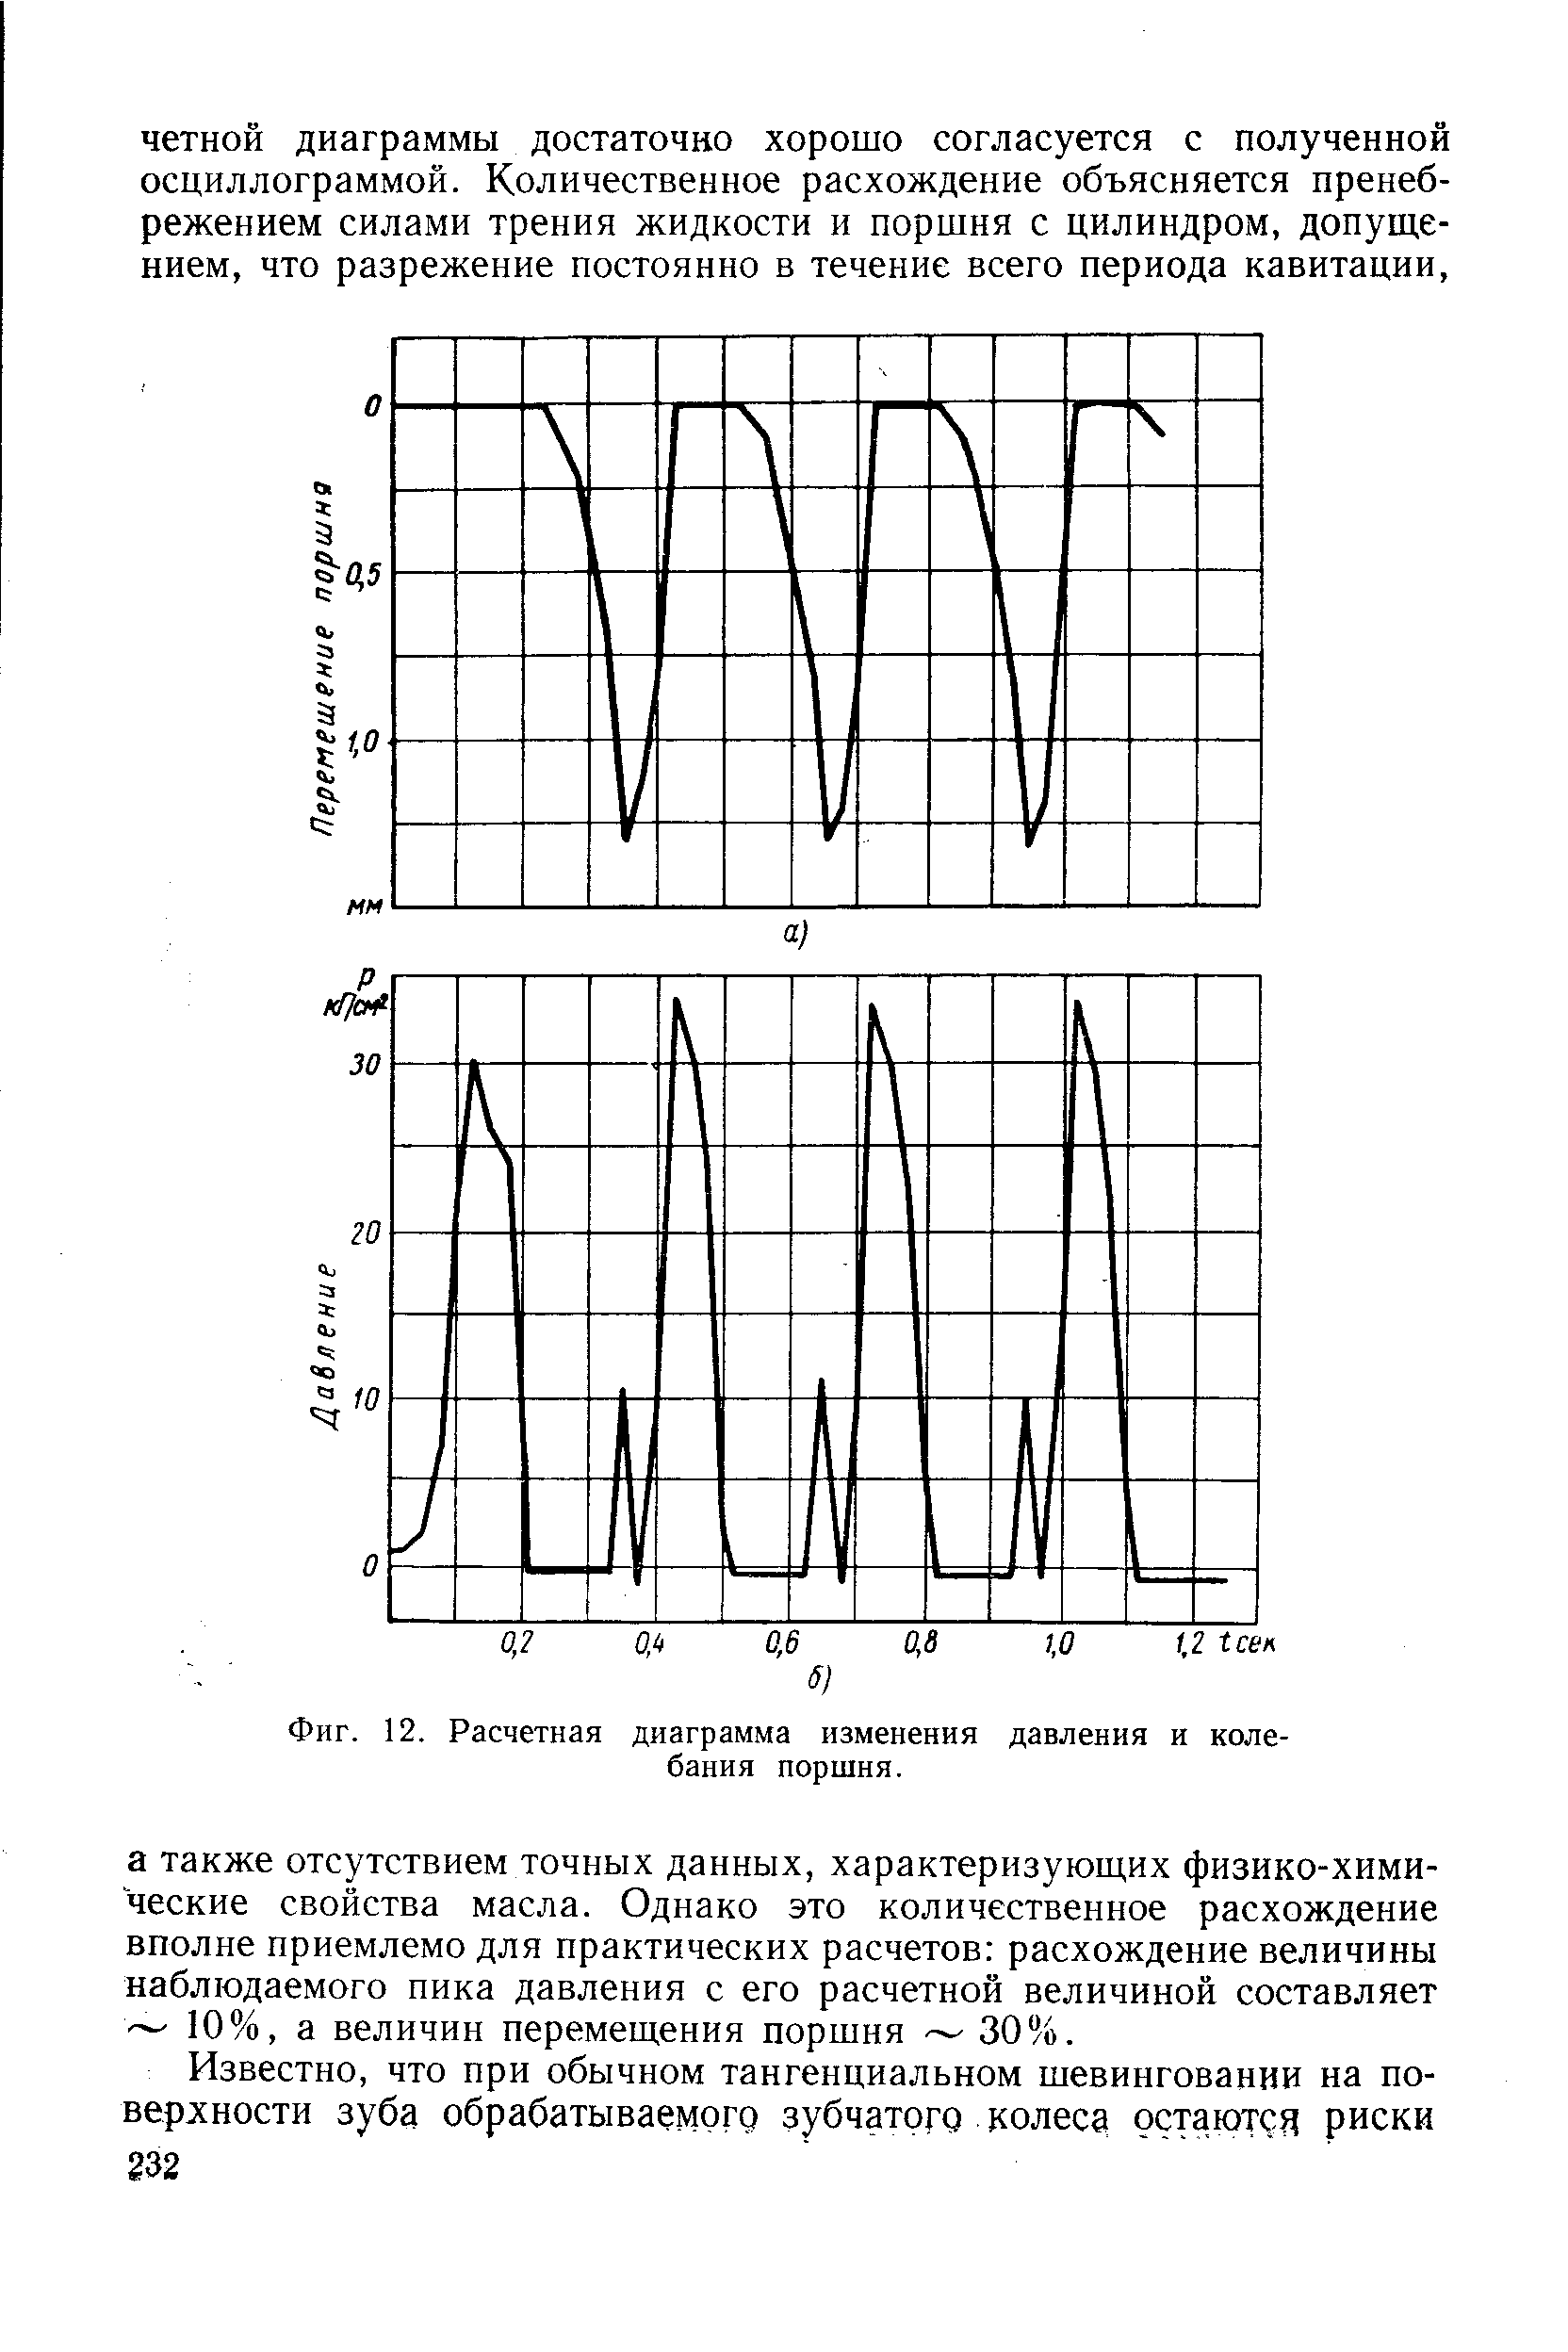 Фиг. 12. Расчетная диаграмма изменения давления и колебания поршня.
